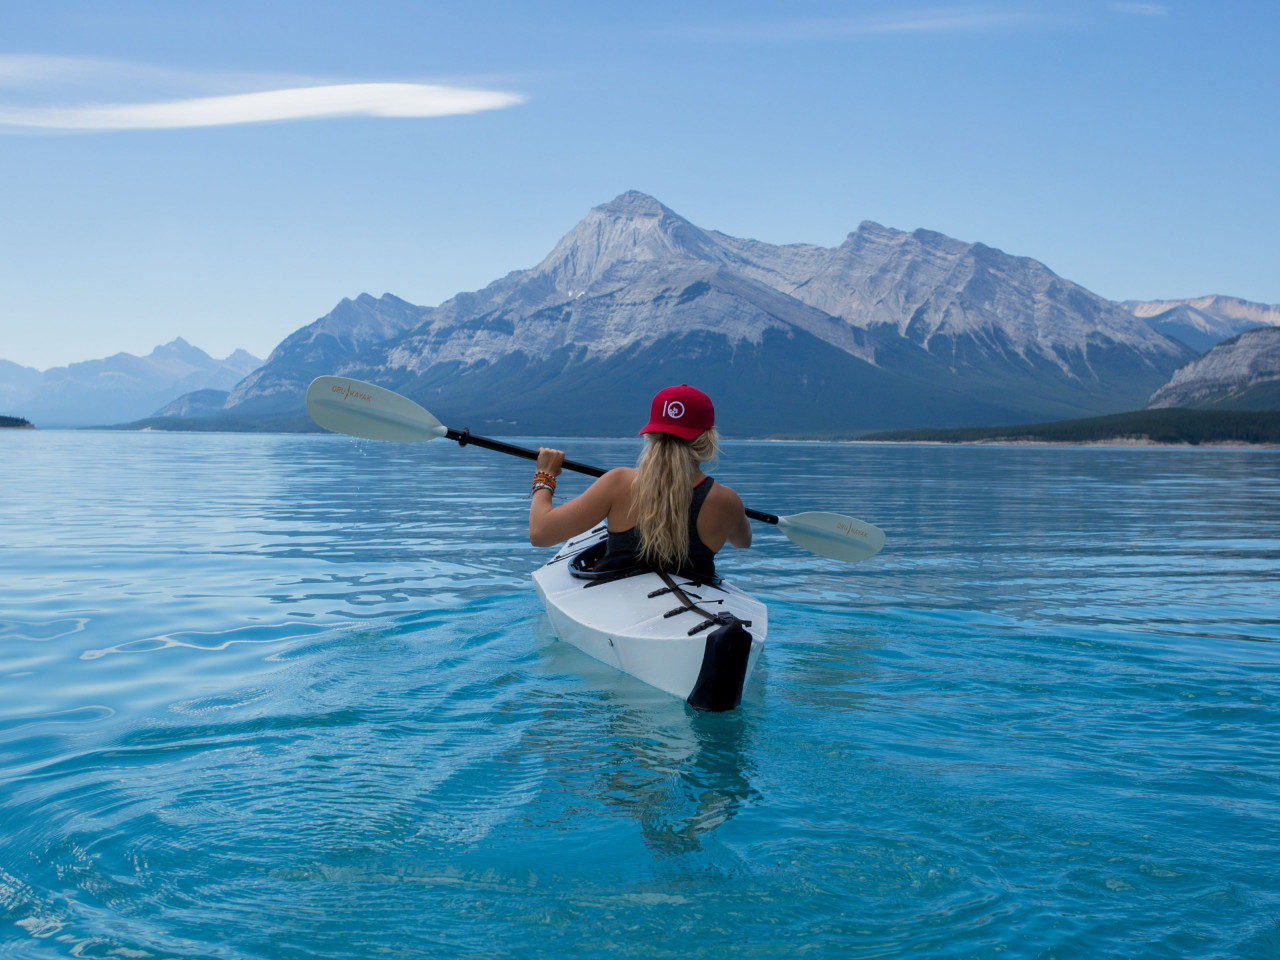 Trip with kayak on lake wallpaper 1280x960